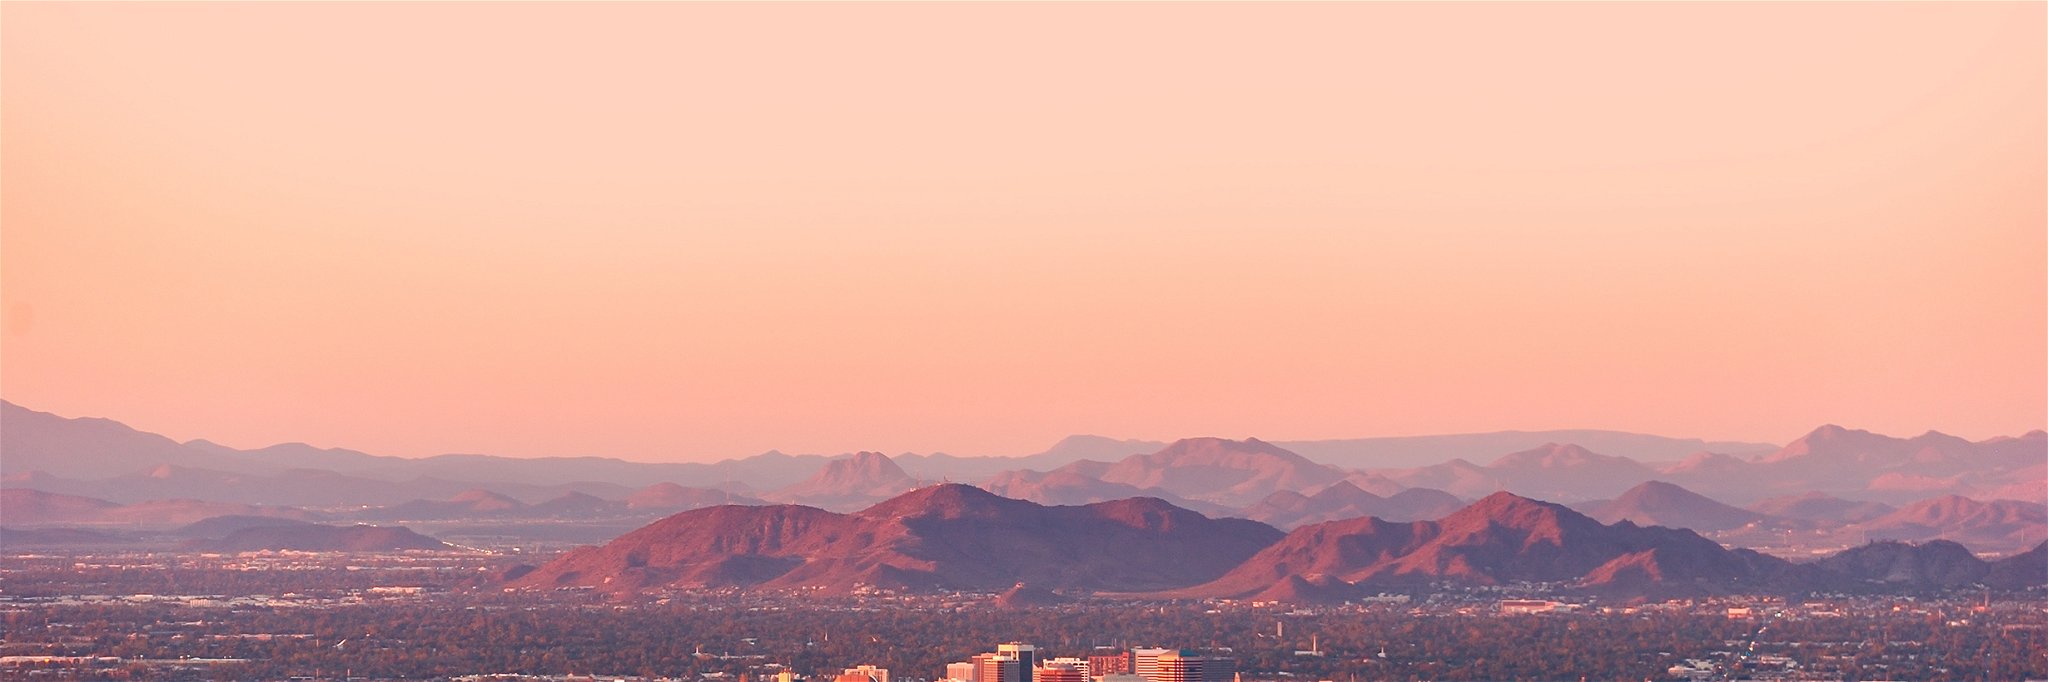 Blick auf Phoenix, die Hauptstadt von Arizona.